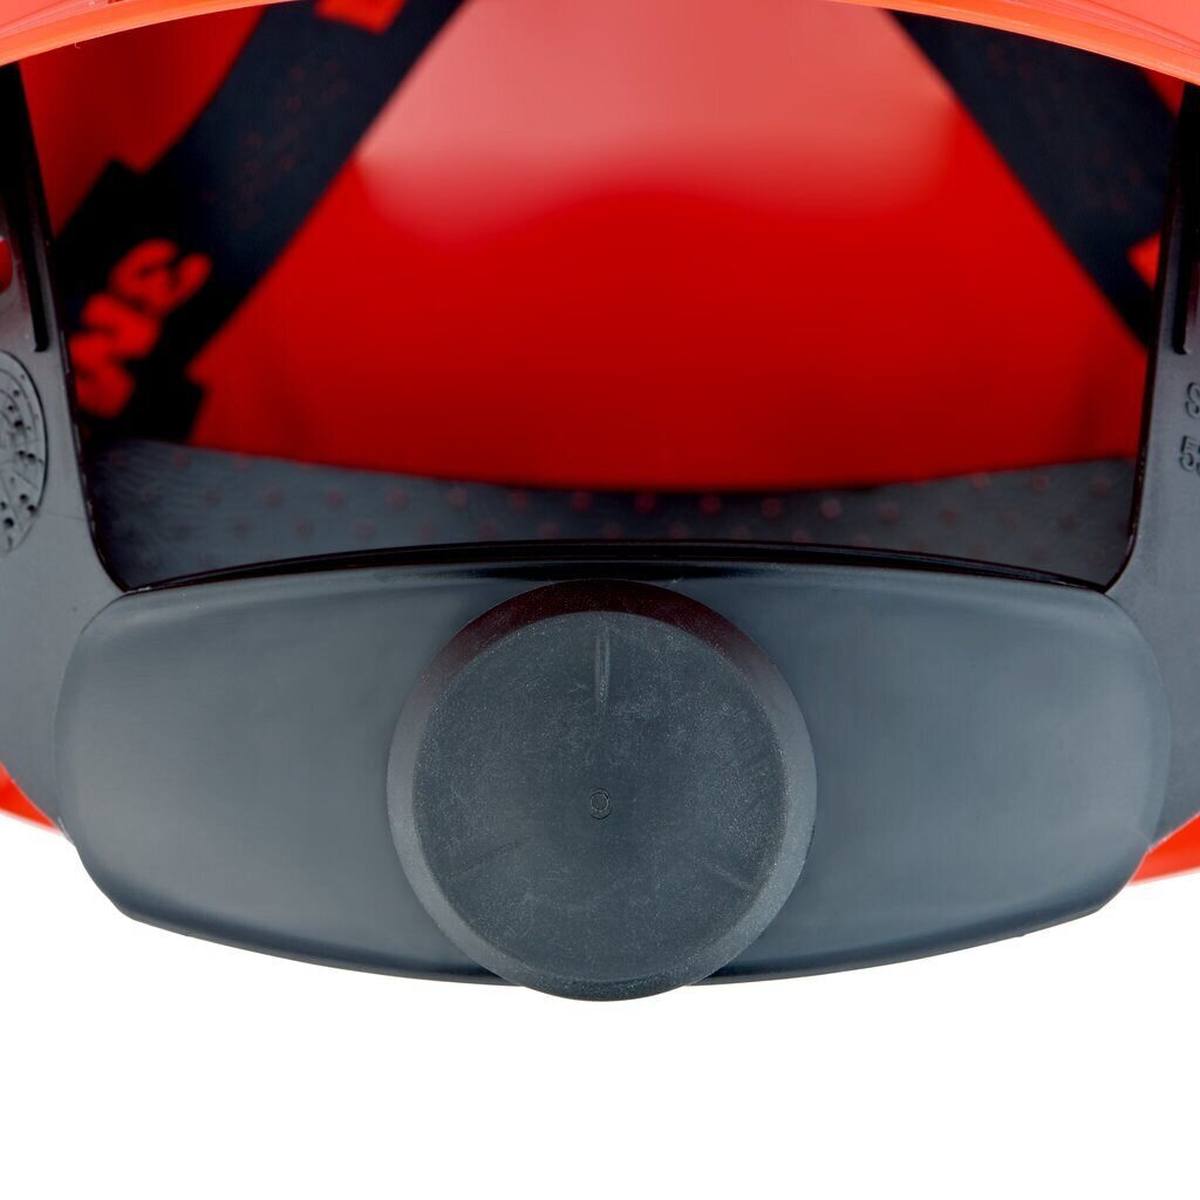 3M G3000 Schutzhelm mit UV-Indikator, rot, ABS, belüftet Ratschenverschluss, Kunststoffschweißband, Reflex-Aufkleber